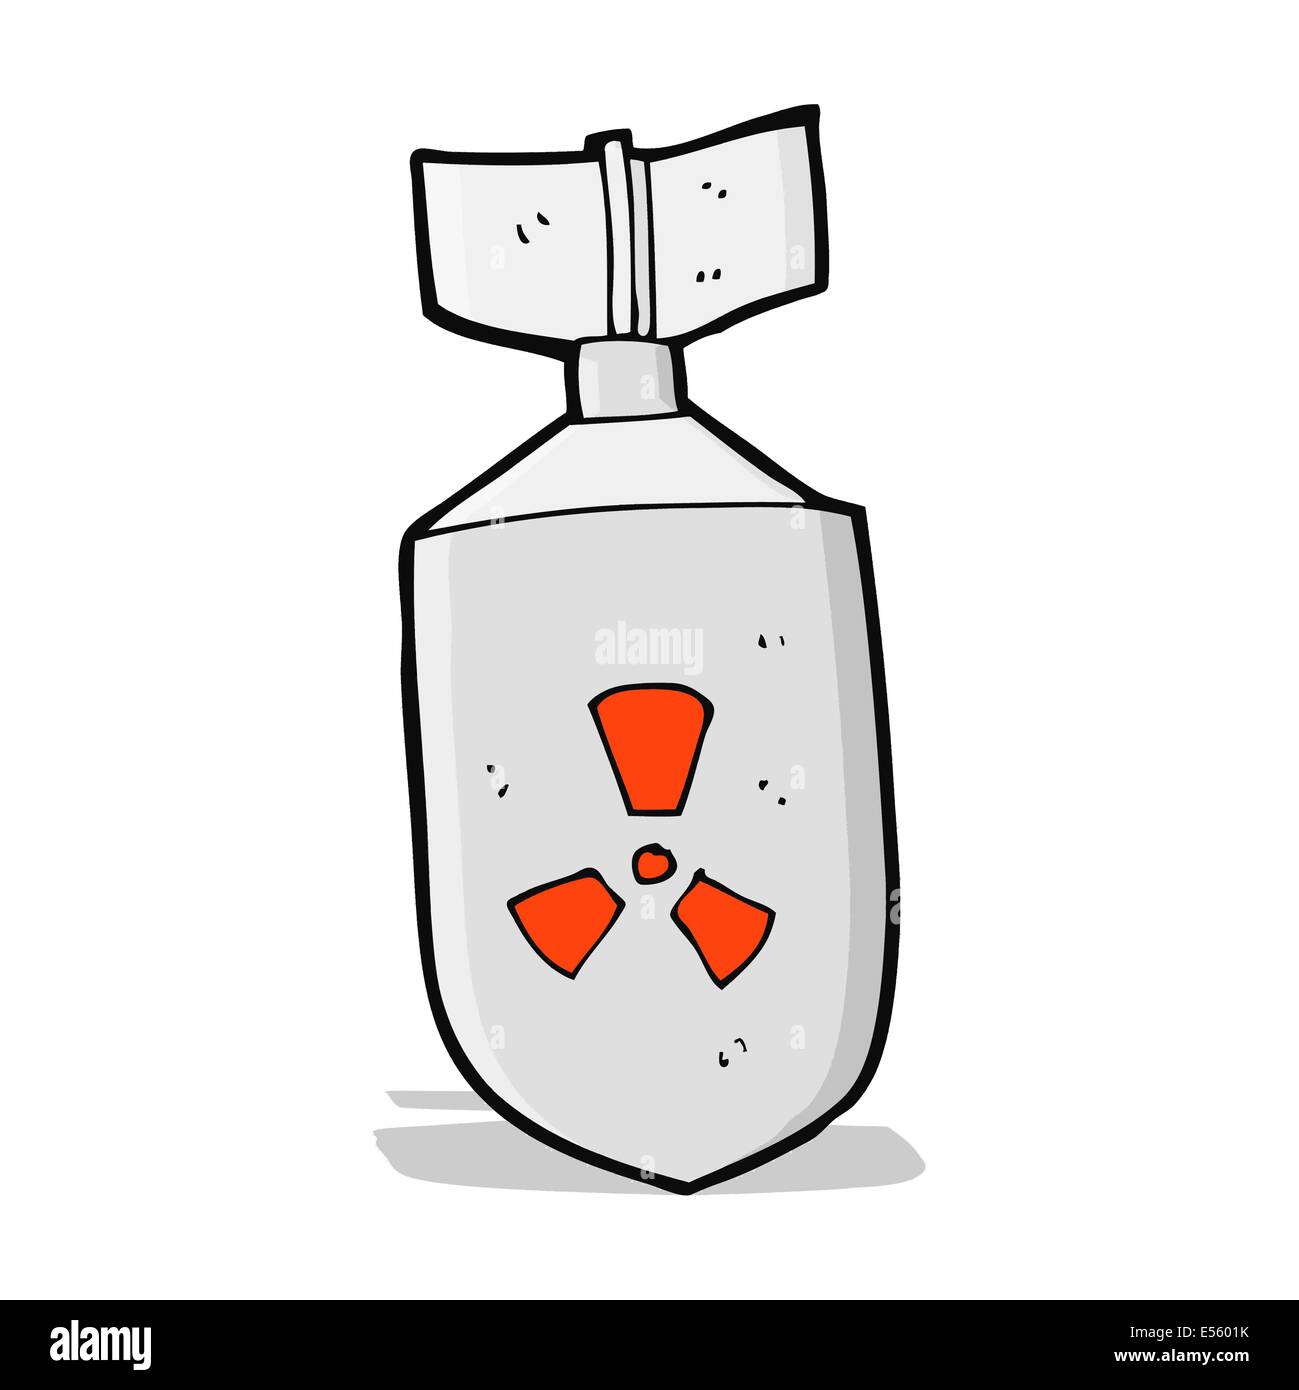 cartoon nuclear bomb Stock Vector Image & Art - Alamy